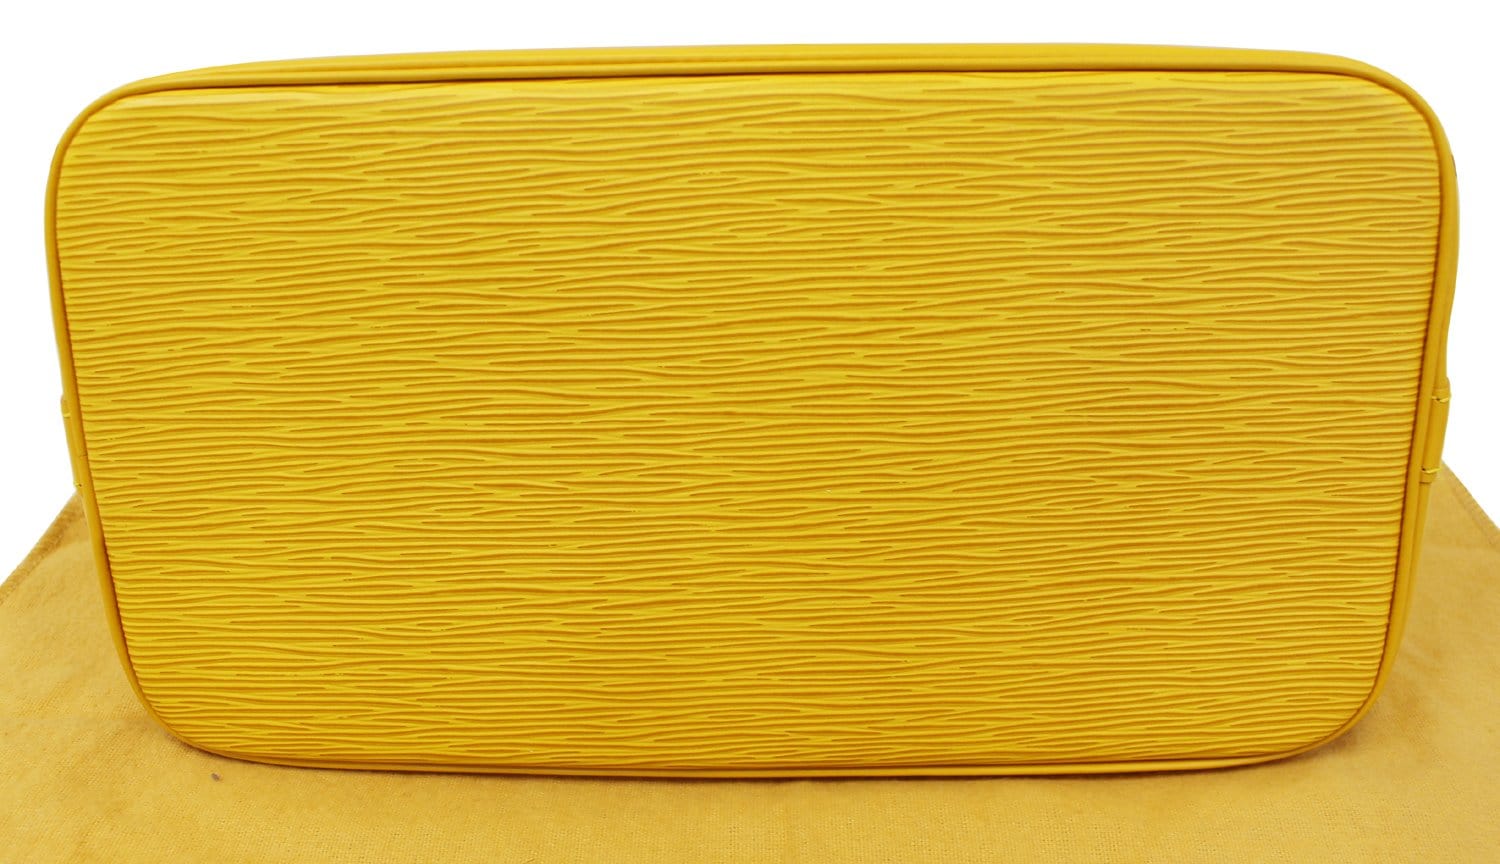 LOUIS VUITTON Epi Leather Alma PM Yellow Satchel Bag - 20% OFF